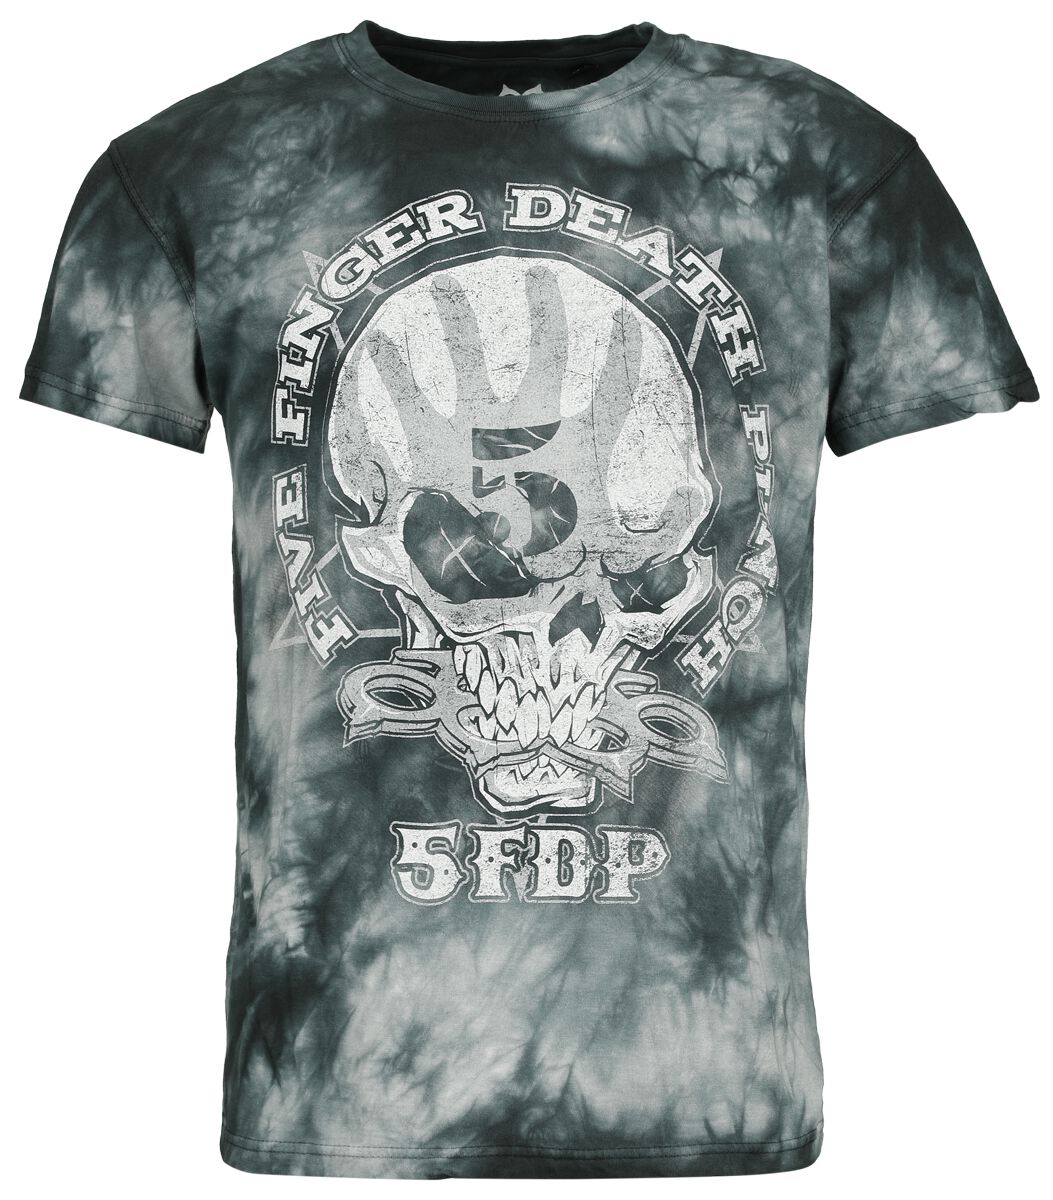 Five Finger Death Punch T-Shirt - 1 2 F U - S bis M - für Männer - Größe M - grau  - Lizenziertes Merchandise!